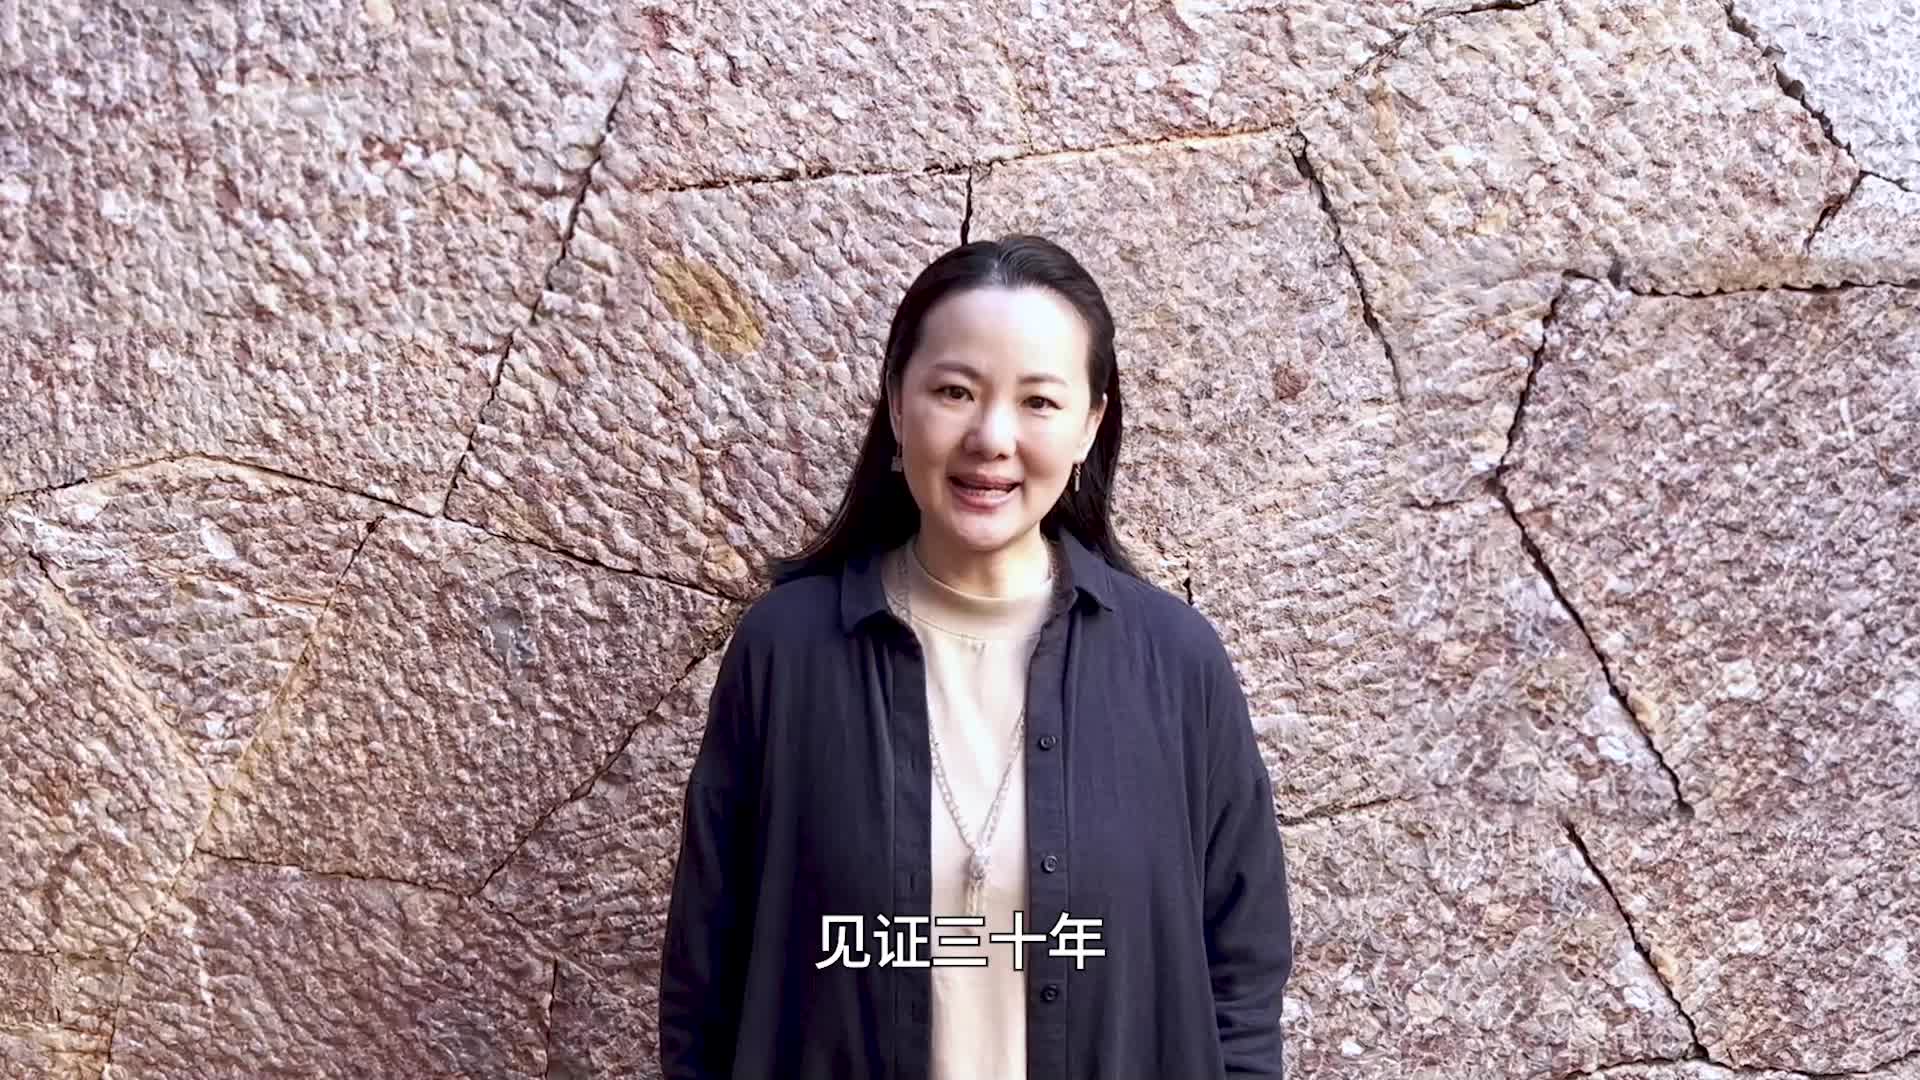 咏梅为中国长春电影节三十周年送上祝福